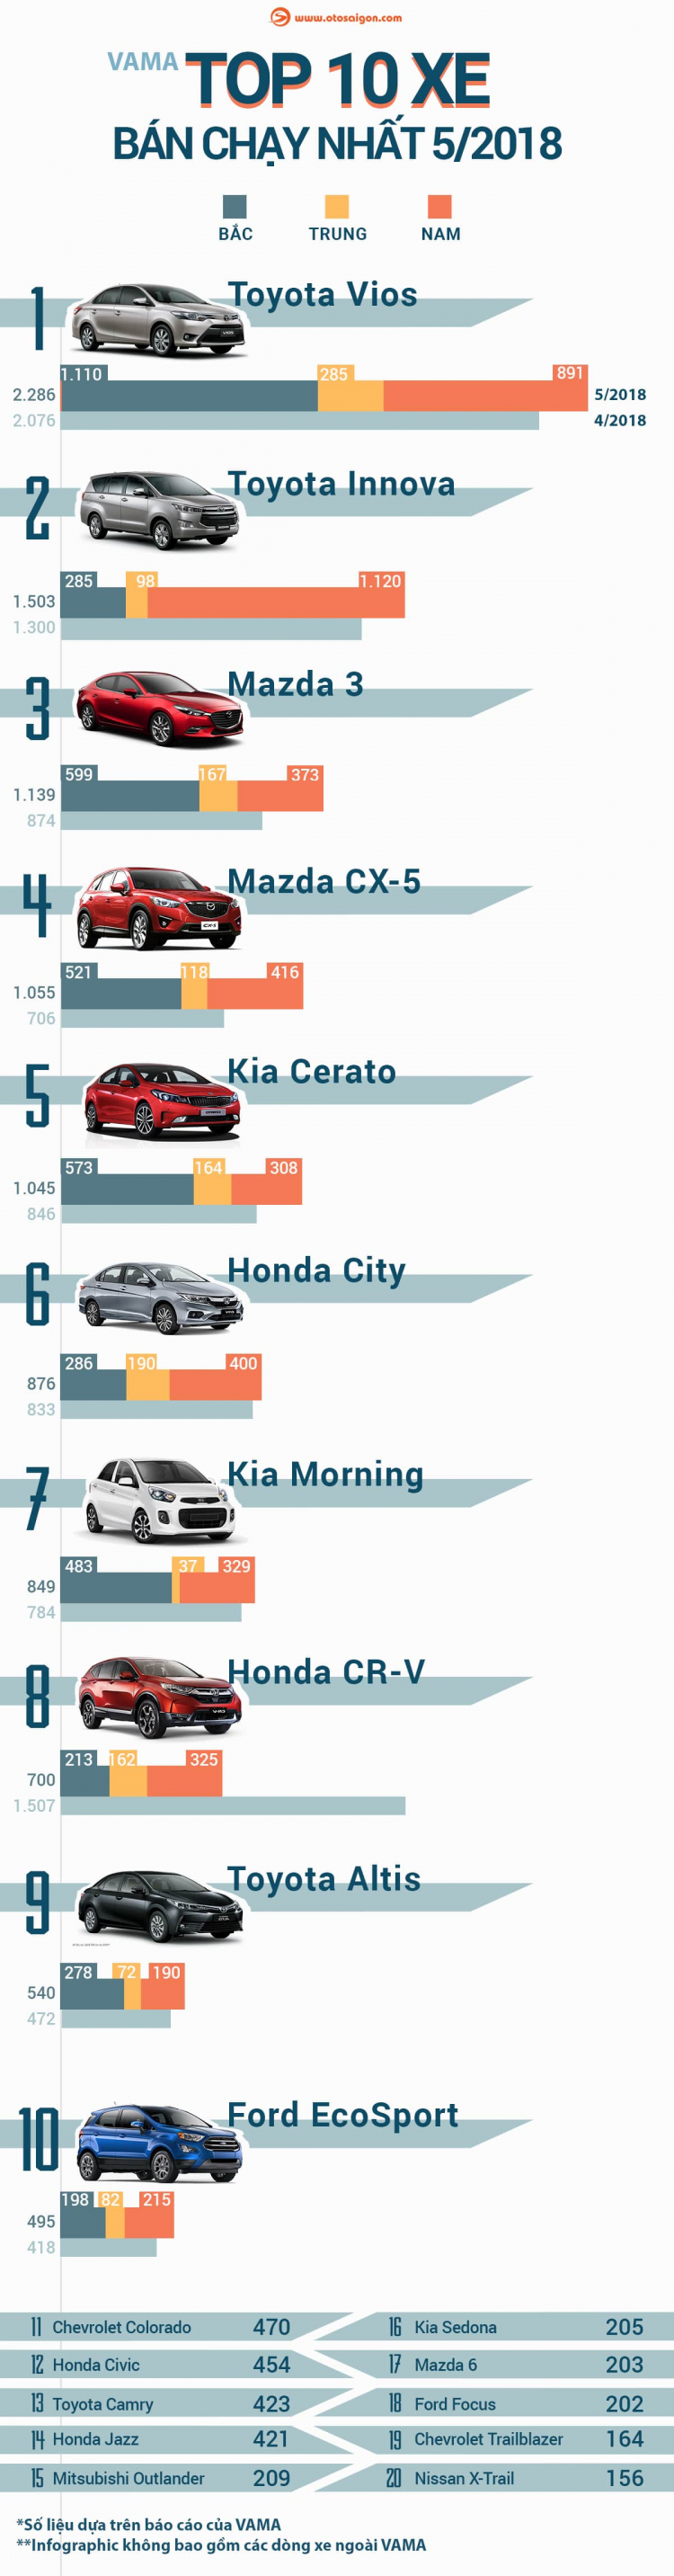 [Infographic] Top 10 xe bán chạy nhất tháng 5/2018